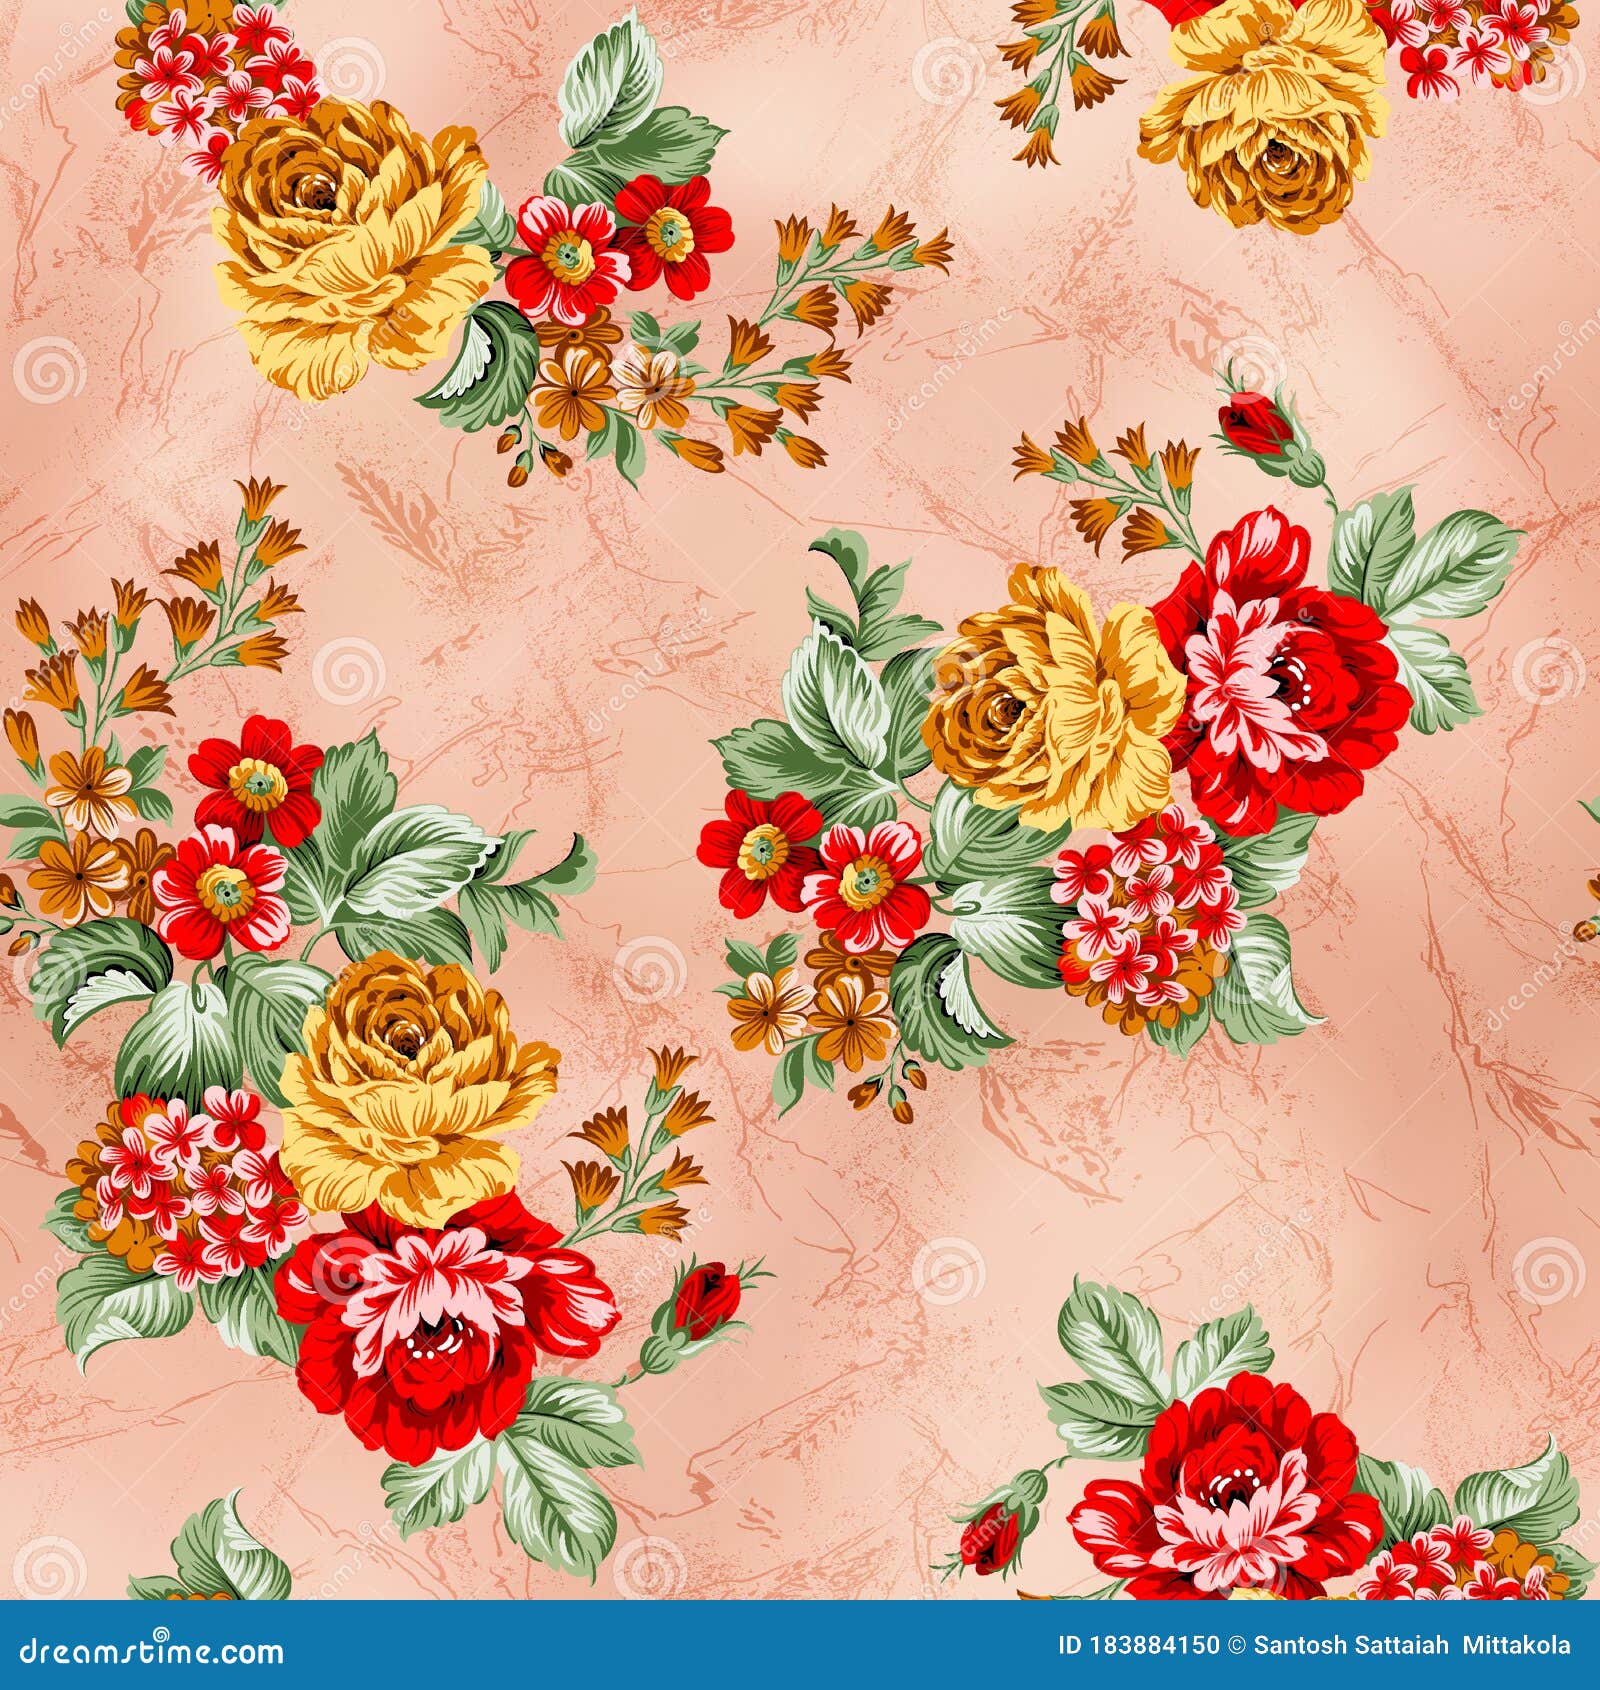 Home textile Wallpaper ✔️ Walls Republic US